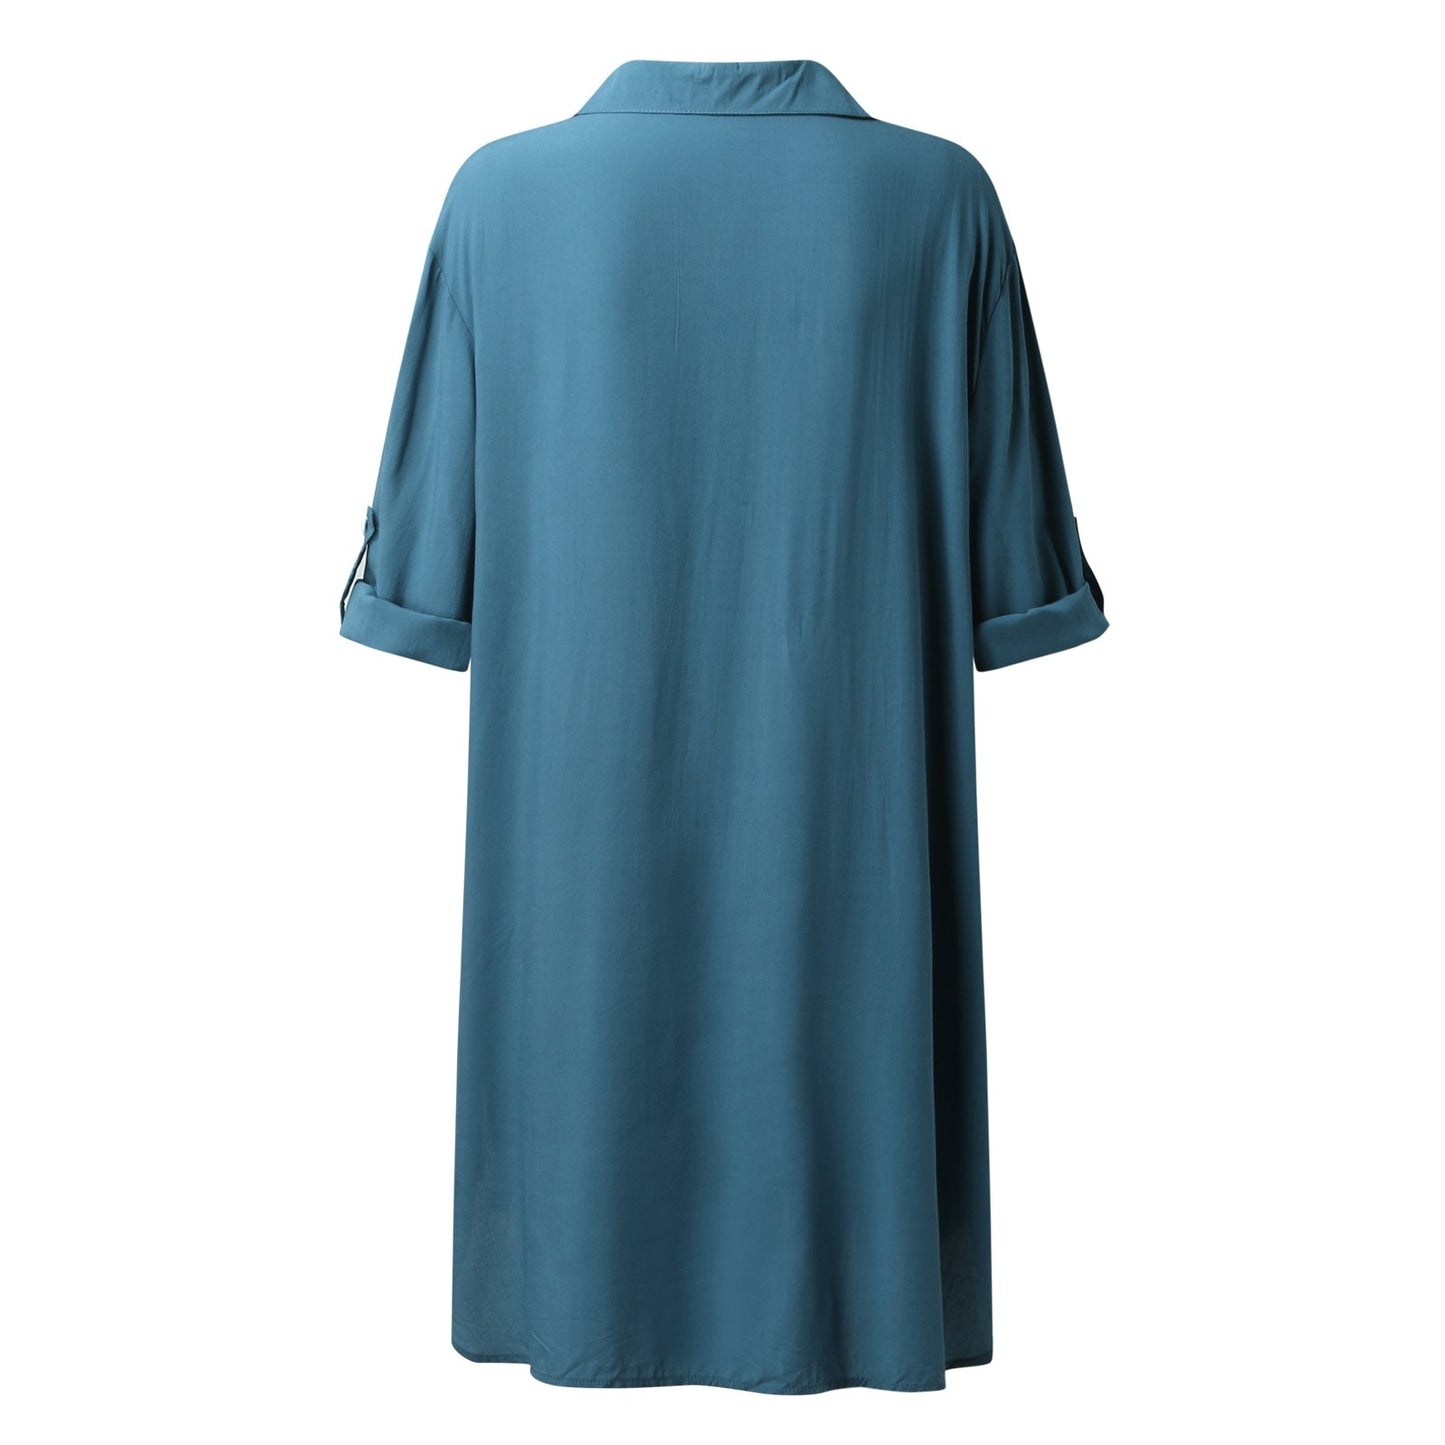 Long Sleeve V Neck Shirt Dress Cardigan For Women